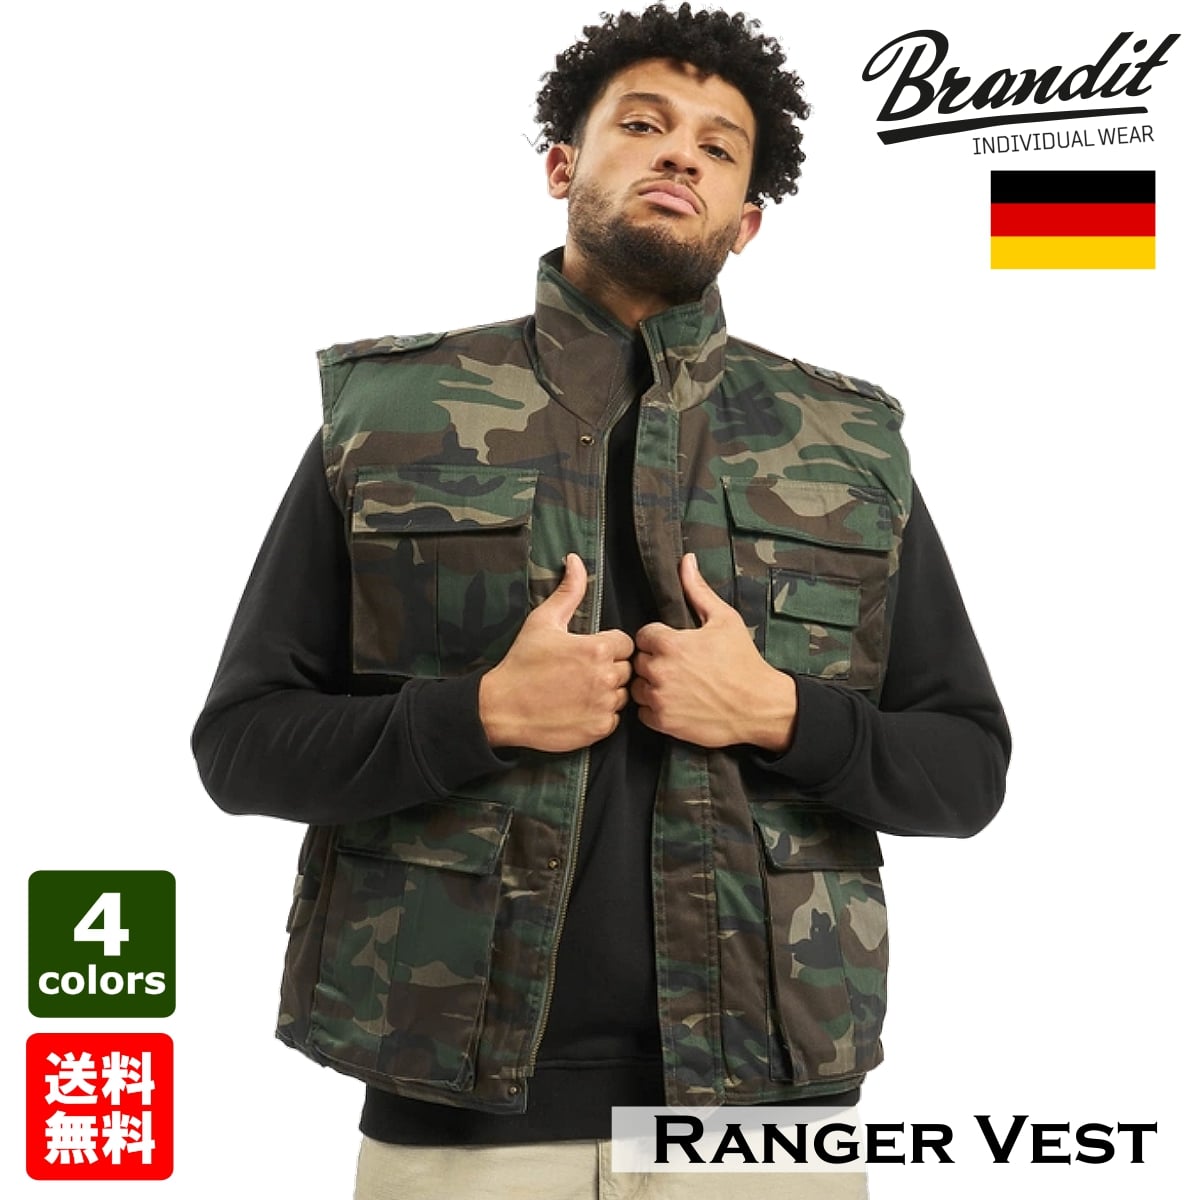 海外正規品 Brandit ブランディット Ranger Vest レンジャーベスト 全4色 ノースリーブ ミリタリー 軍隊 アウター メンズ ドイツメーカー インナーポケット 袖なしジャケット 迷彩 カモフラージュ バイク バイカー アメカジ アウトドア サバゲーに 大きいサイズ